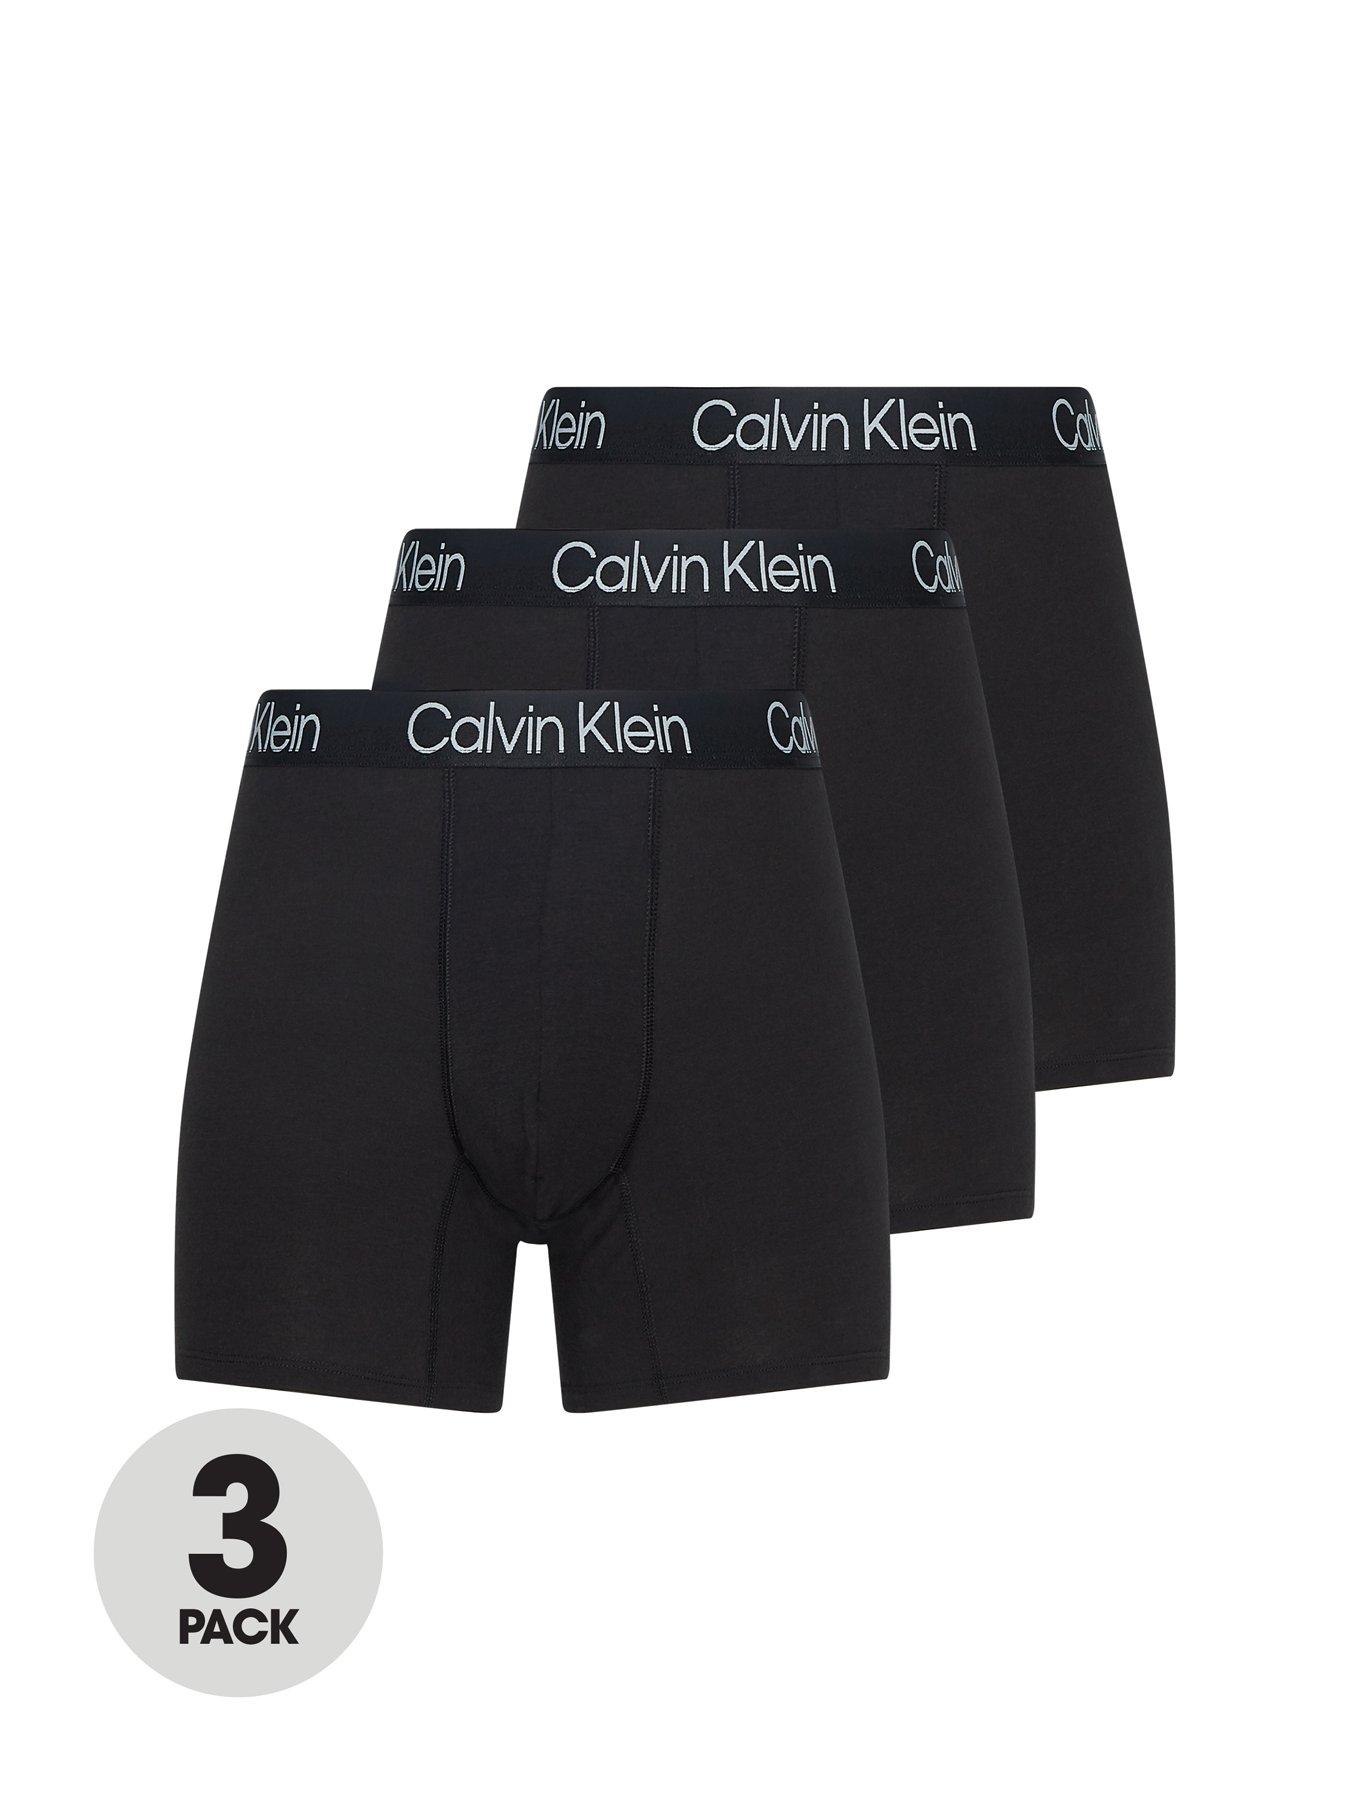 Calvin Klein 3 Pack Boxer Briefs Modern Structure - Black, Black, Size Xl, Men